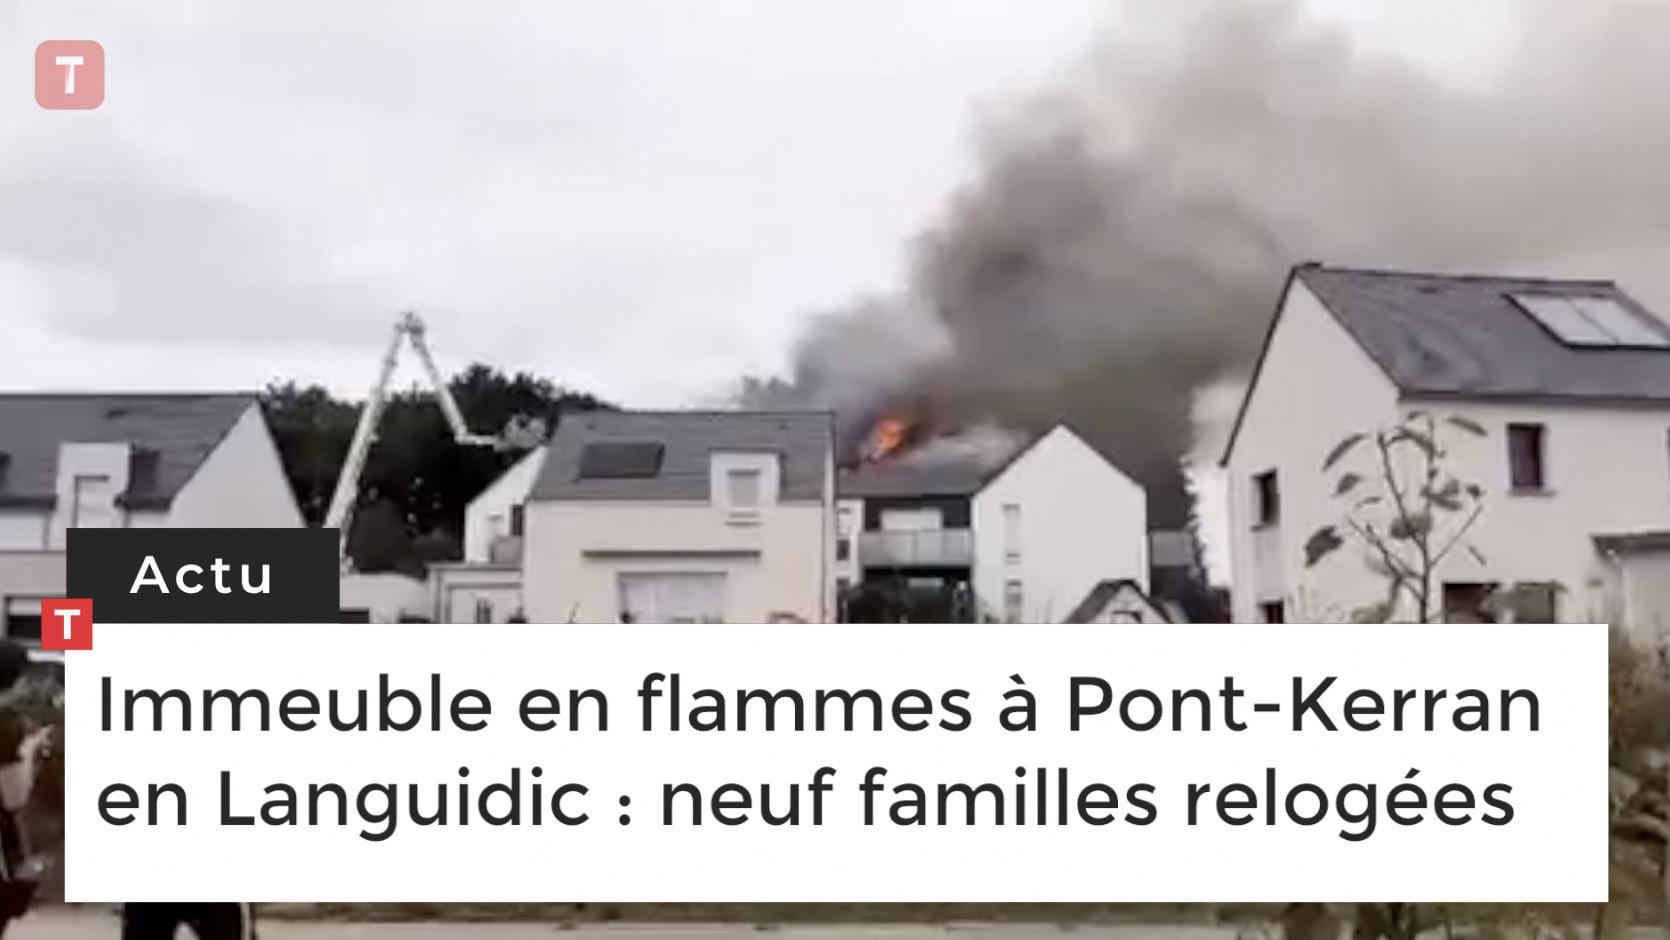 Immeuble en flammes à Pont-Kerran en Languidic : neuf familles relogées (Le Télégramme)